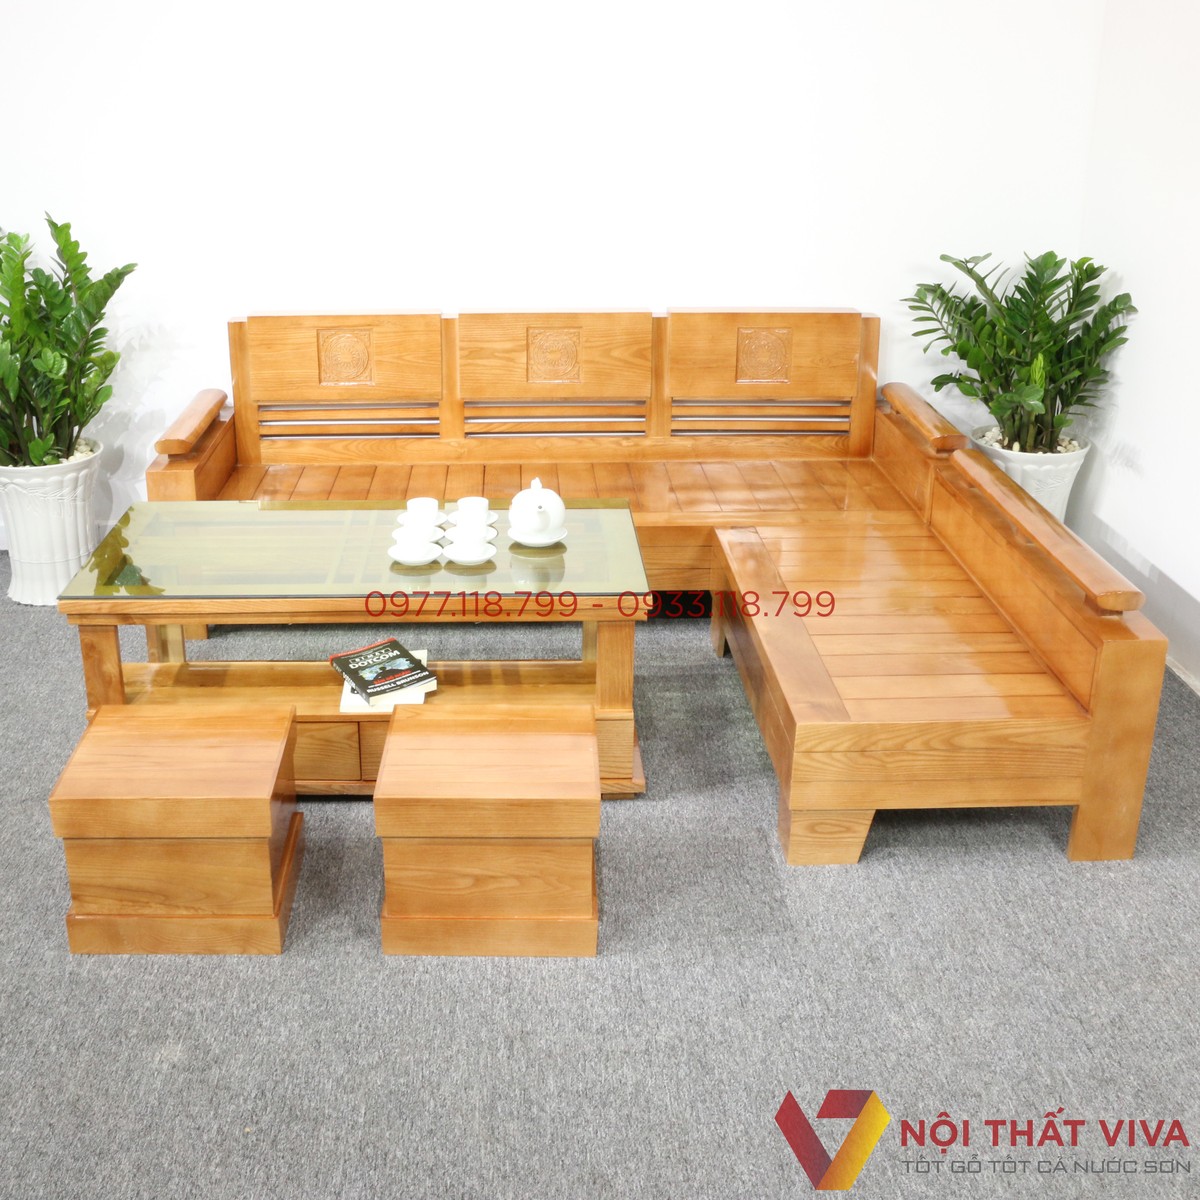 Bàn ghế gỗ tiết kiệm cho phòng khách 20m2 giúp bạn tiết kiệm không gian mà vẫn sang trọng và đẹp mắt. Với giá cả phải chăng và chất lượng đảm bảo, sản phẩm này sẽ là lựa chọn hoàn hảo cho gia đình mình.